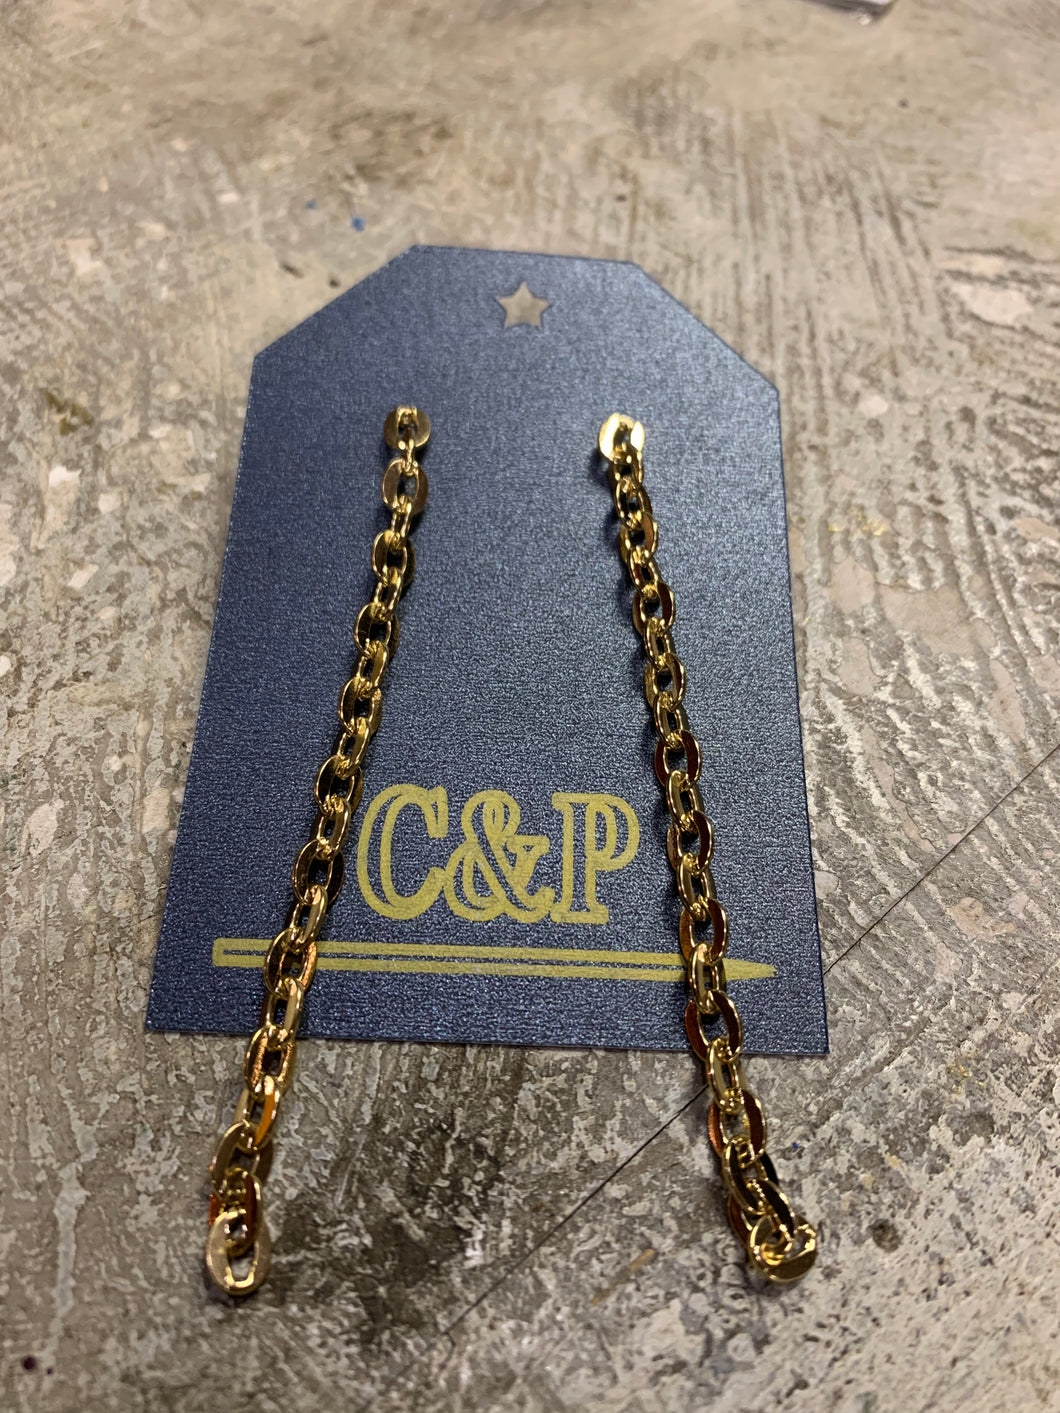 Cuban Chain Gang Earrings